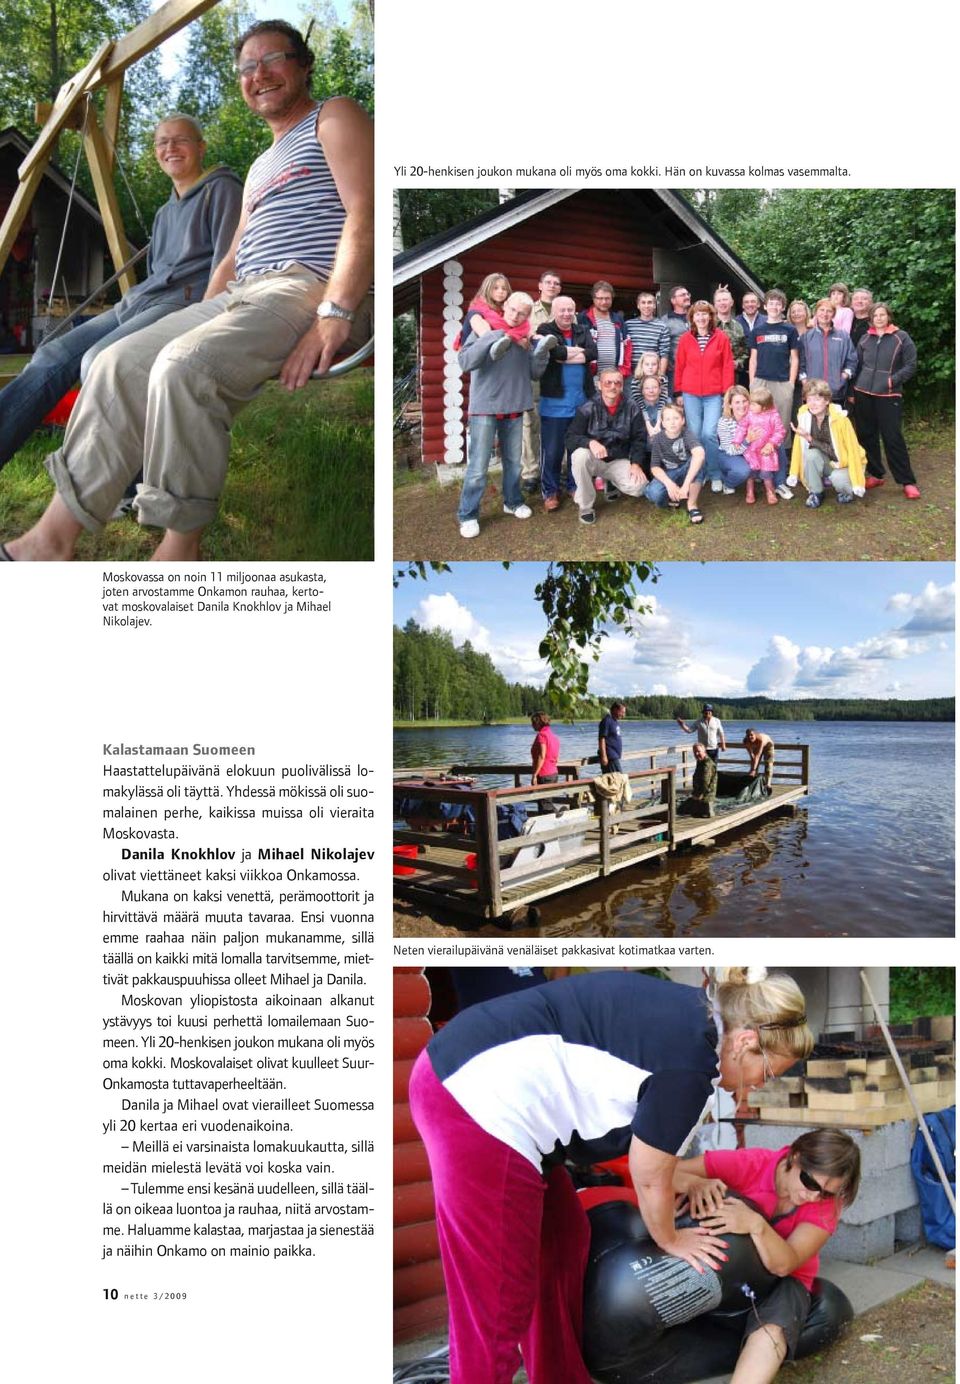 Kalastamaan Suomeen Haastattelupäivänä elokuun puolivälissä lomakylässä oli täyttä. Yhdessä mökissä oli suomalainen perhe, kaikissa muissa oli vieraita Moskovasta.